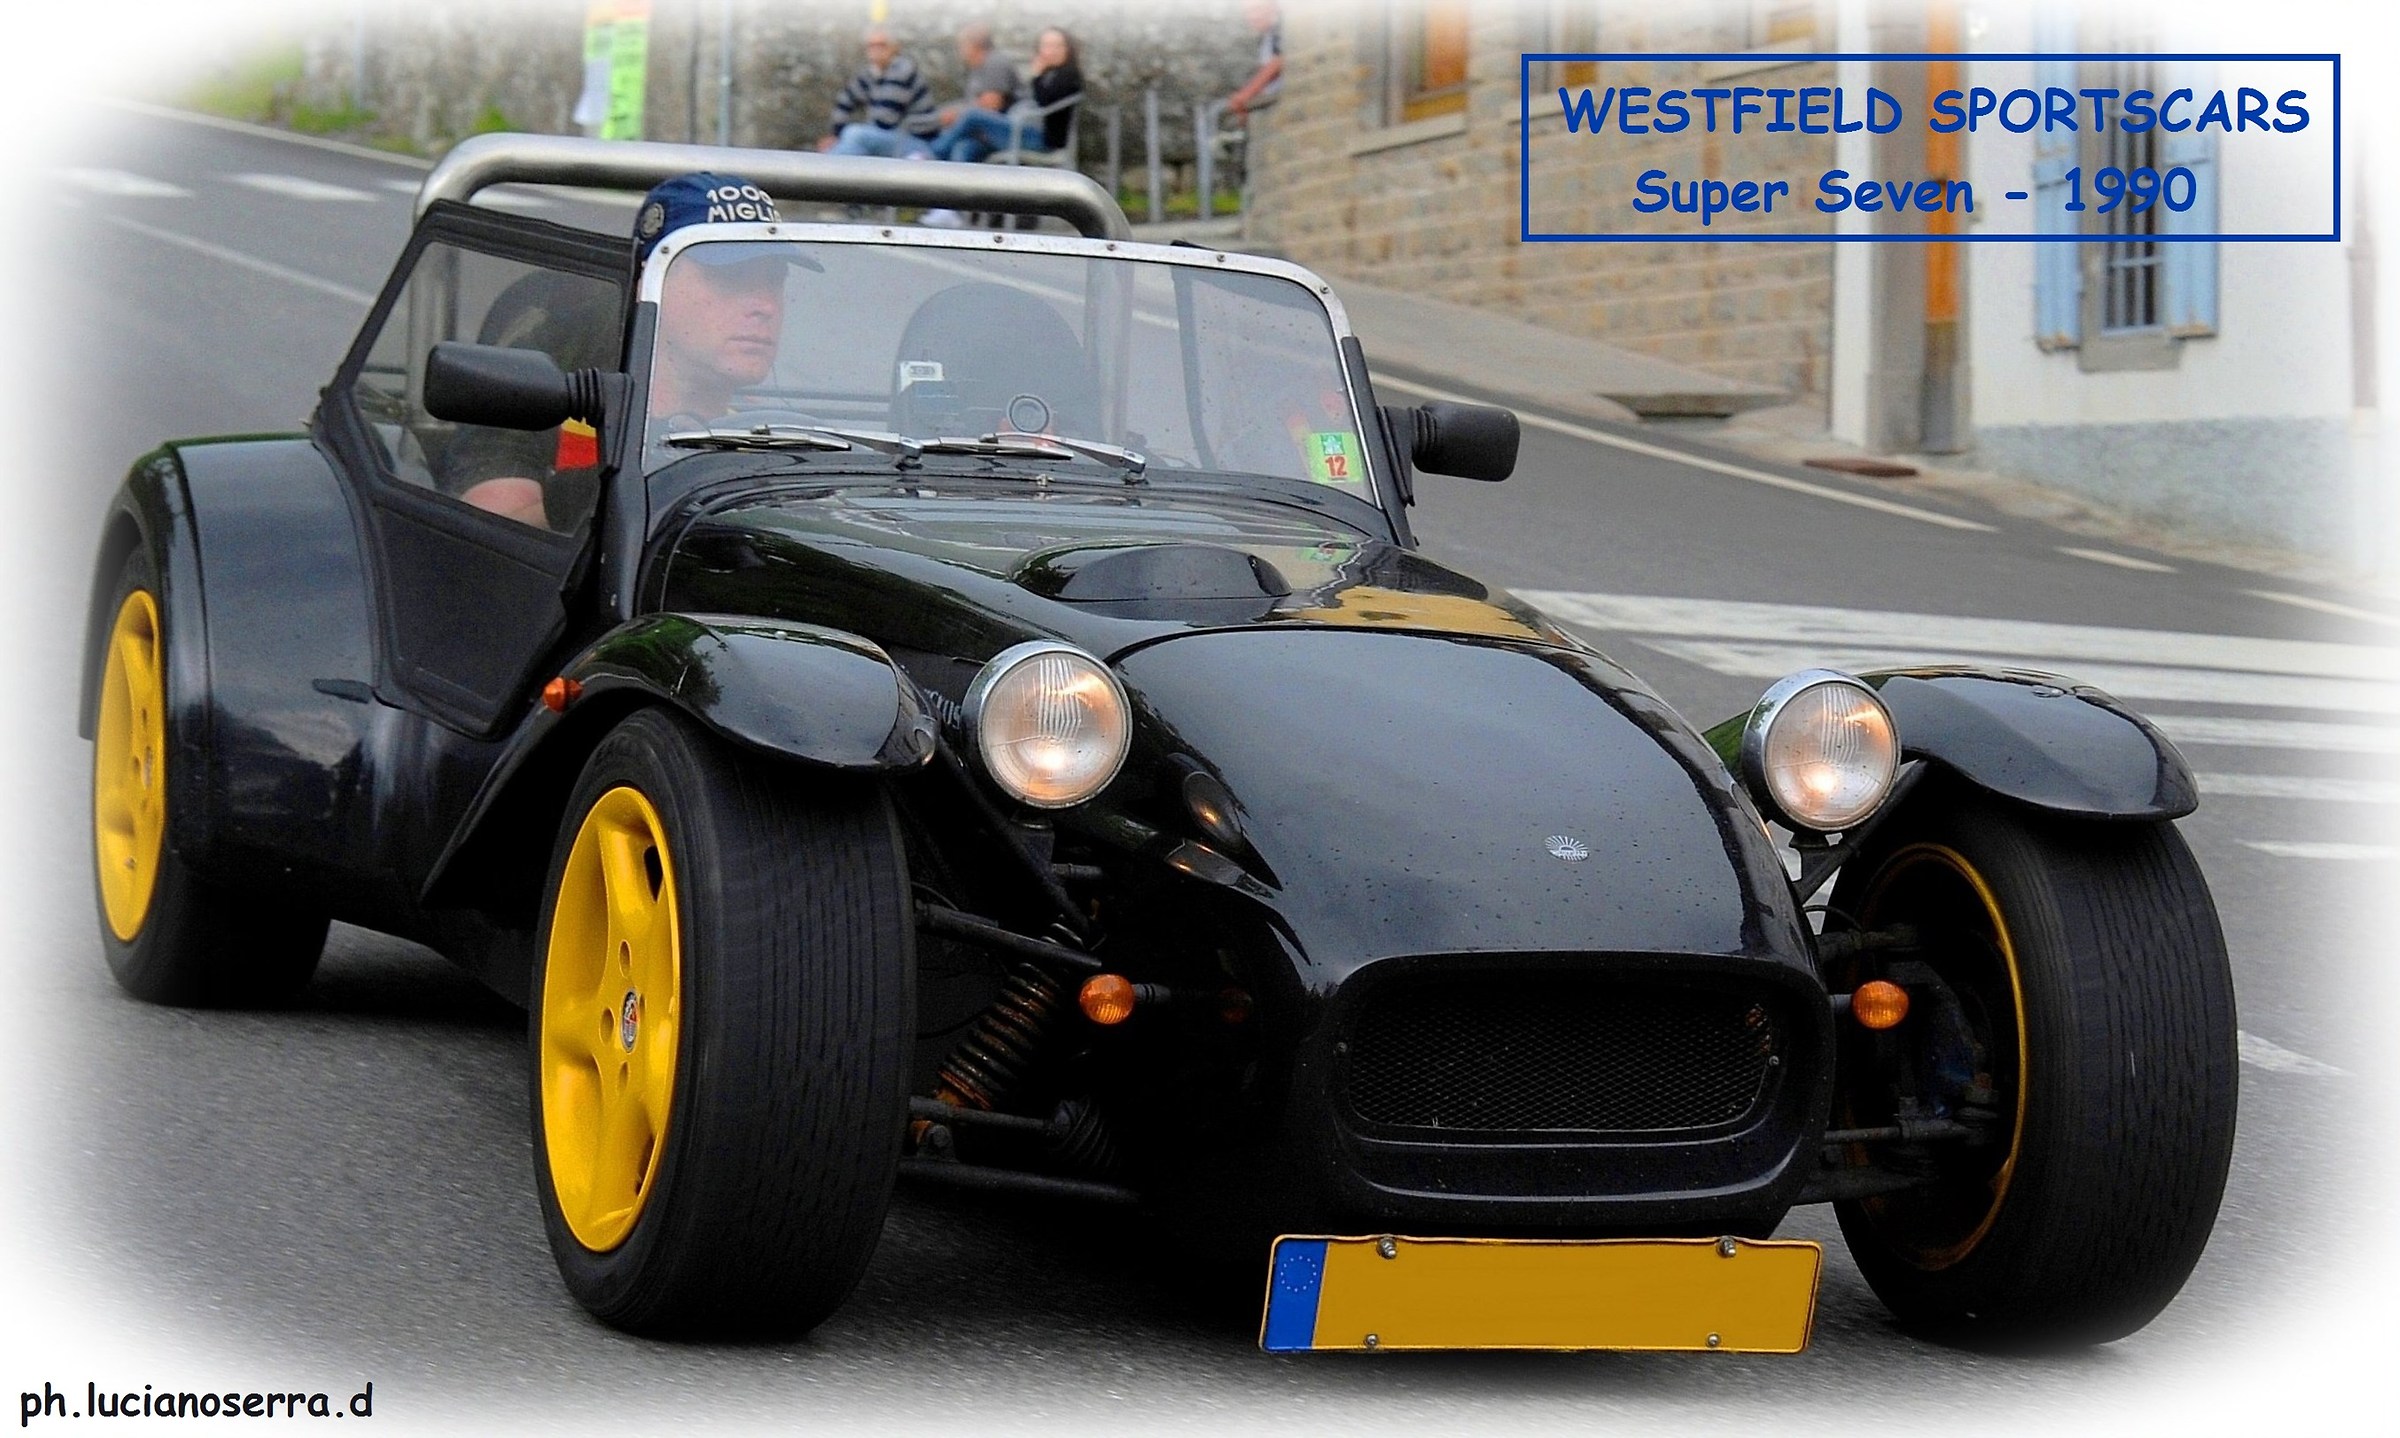 Westfields Sportscars Supr Seven - 1990...